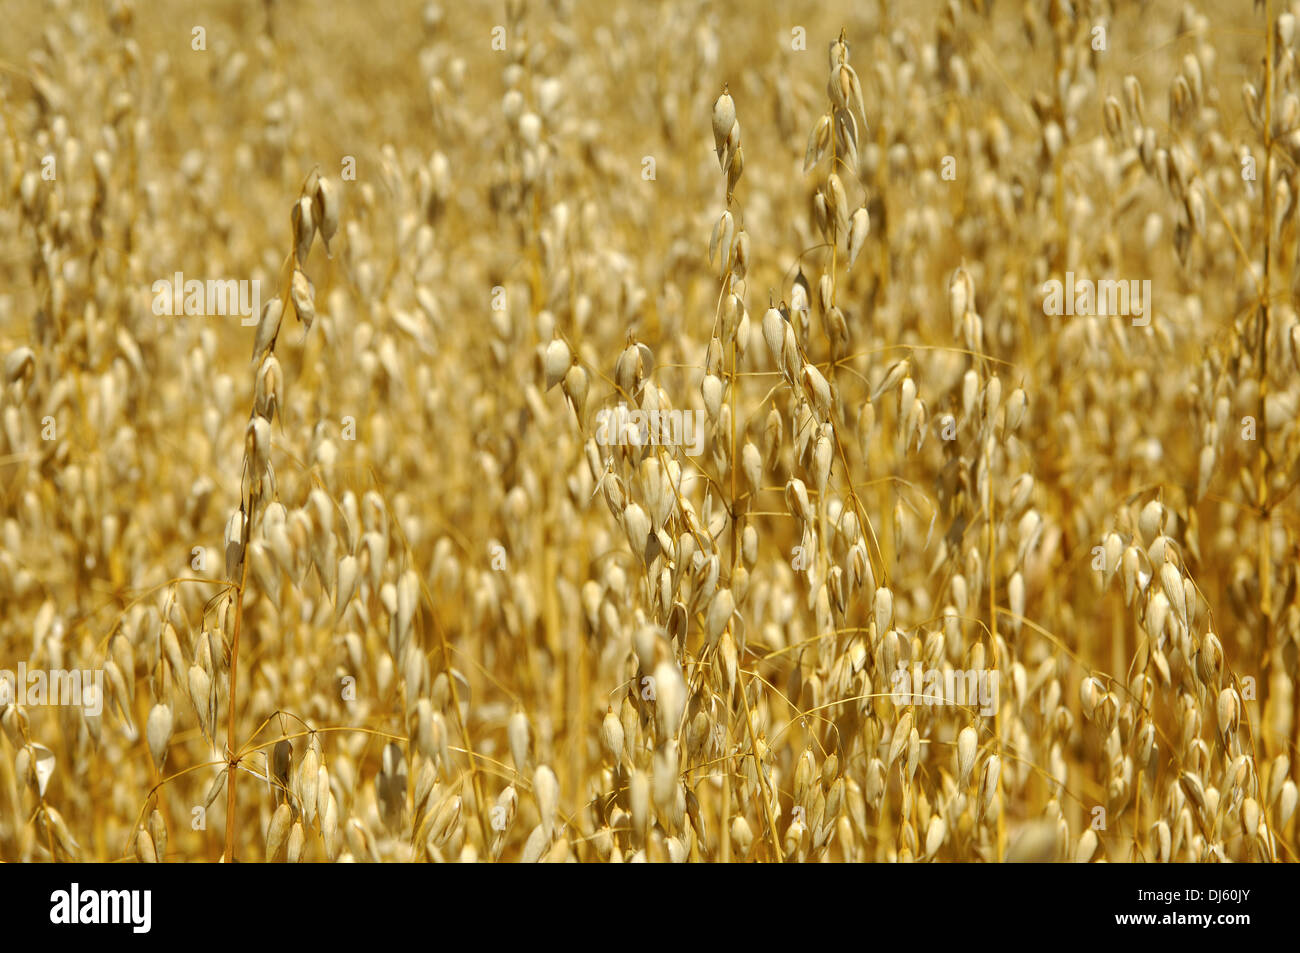 Field with ripe oats (Avena sativa) Stock Photo